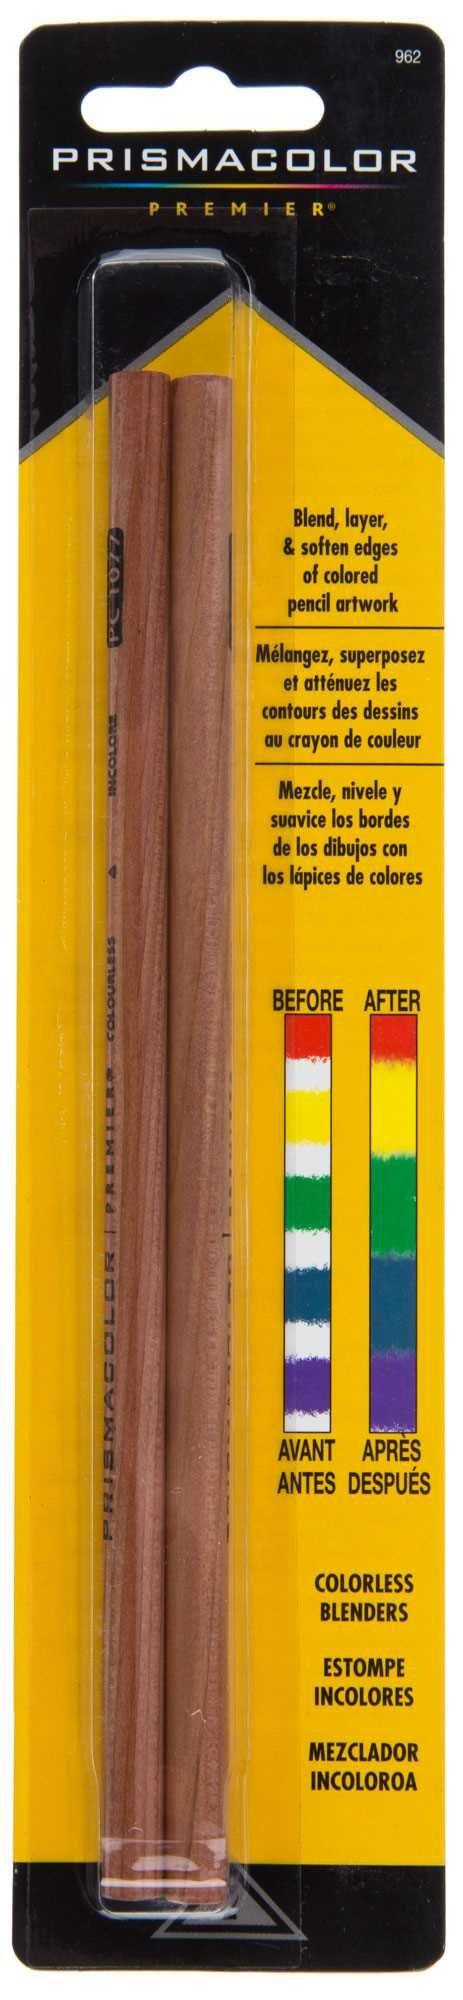 Prismacolor Colorless Blender Pencils - 2 Piece Set